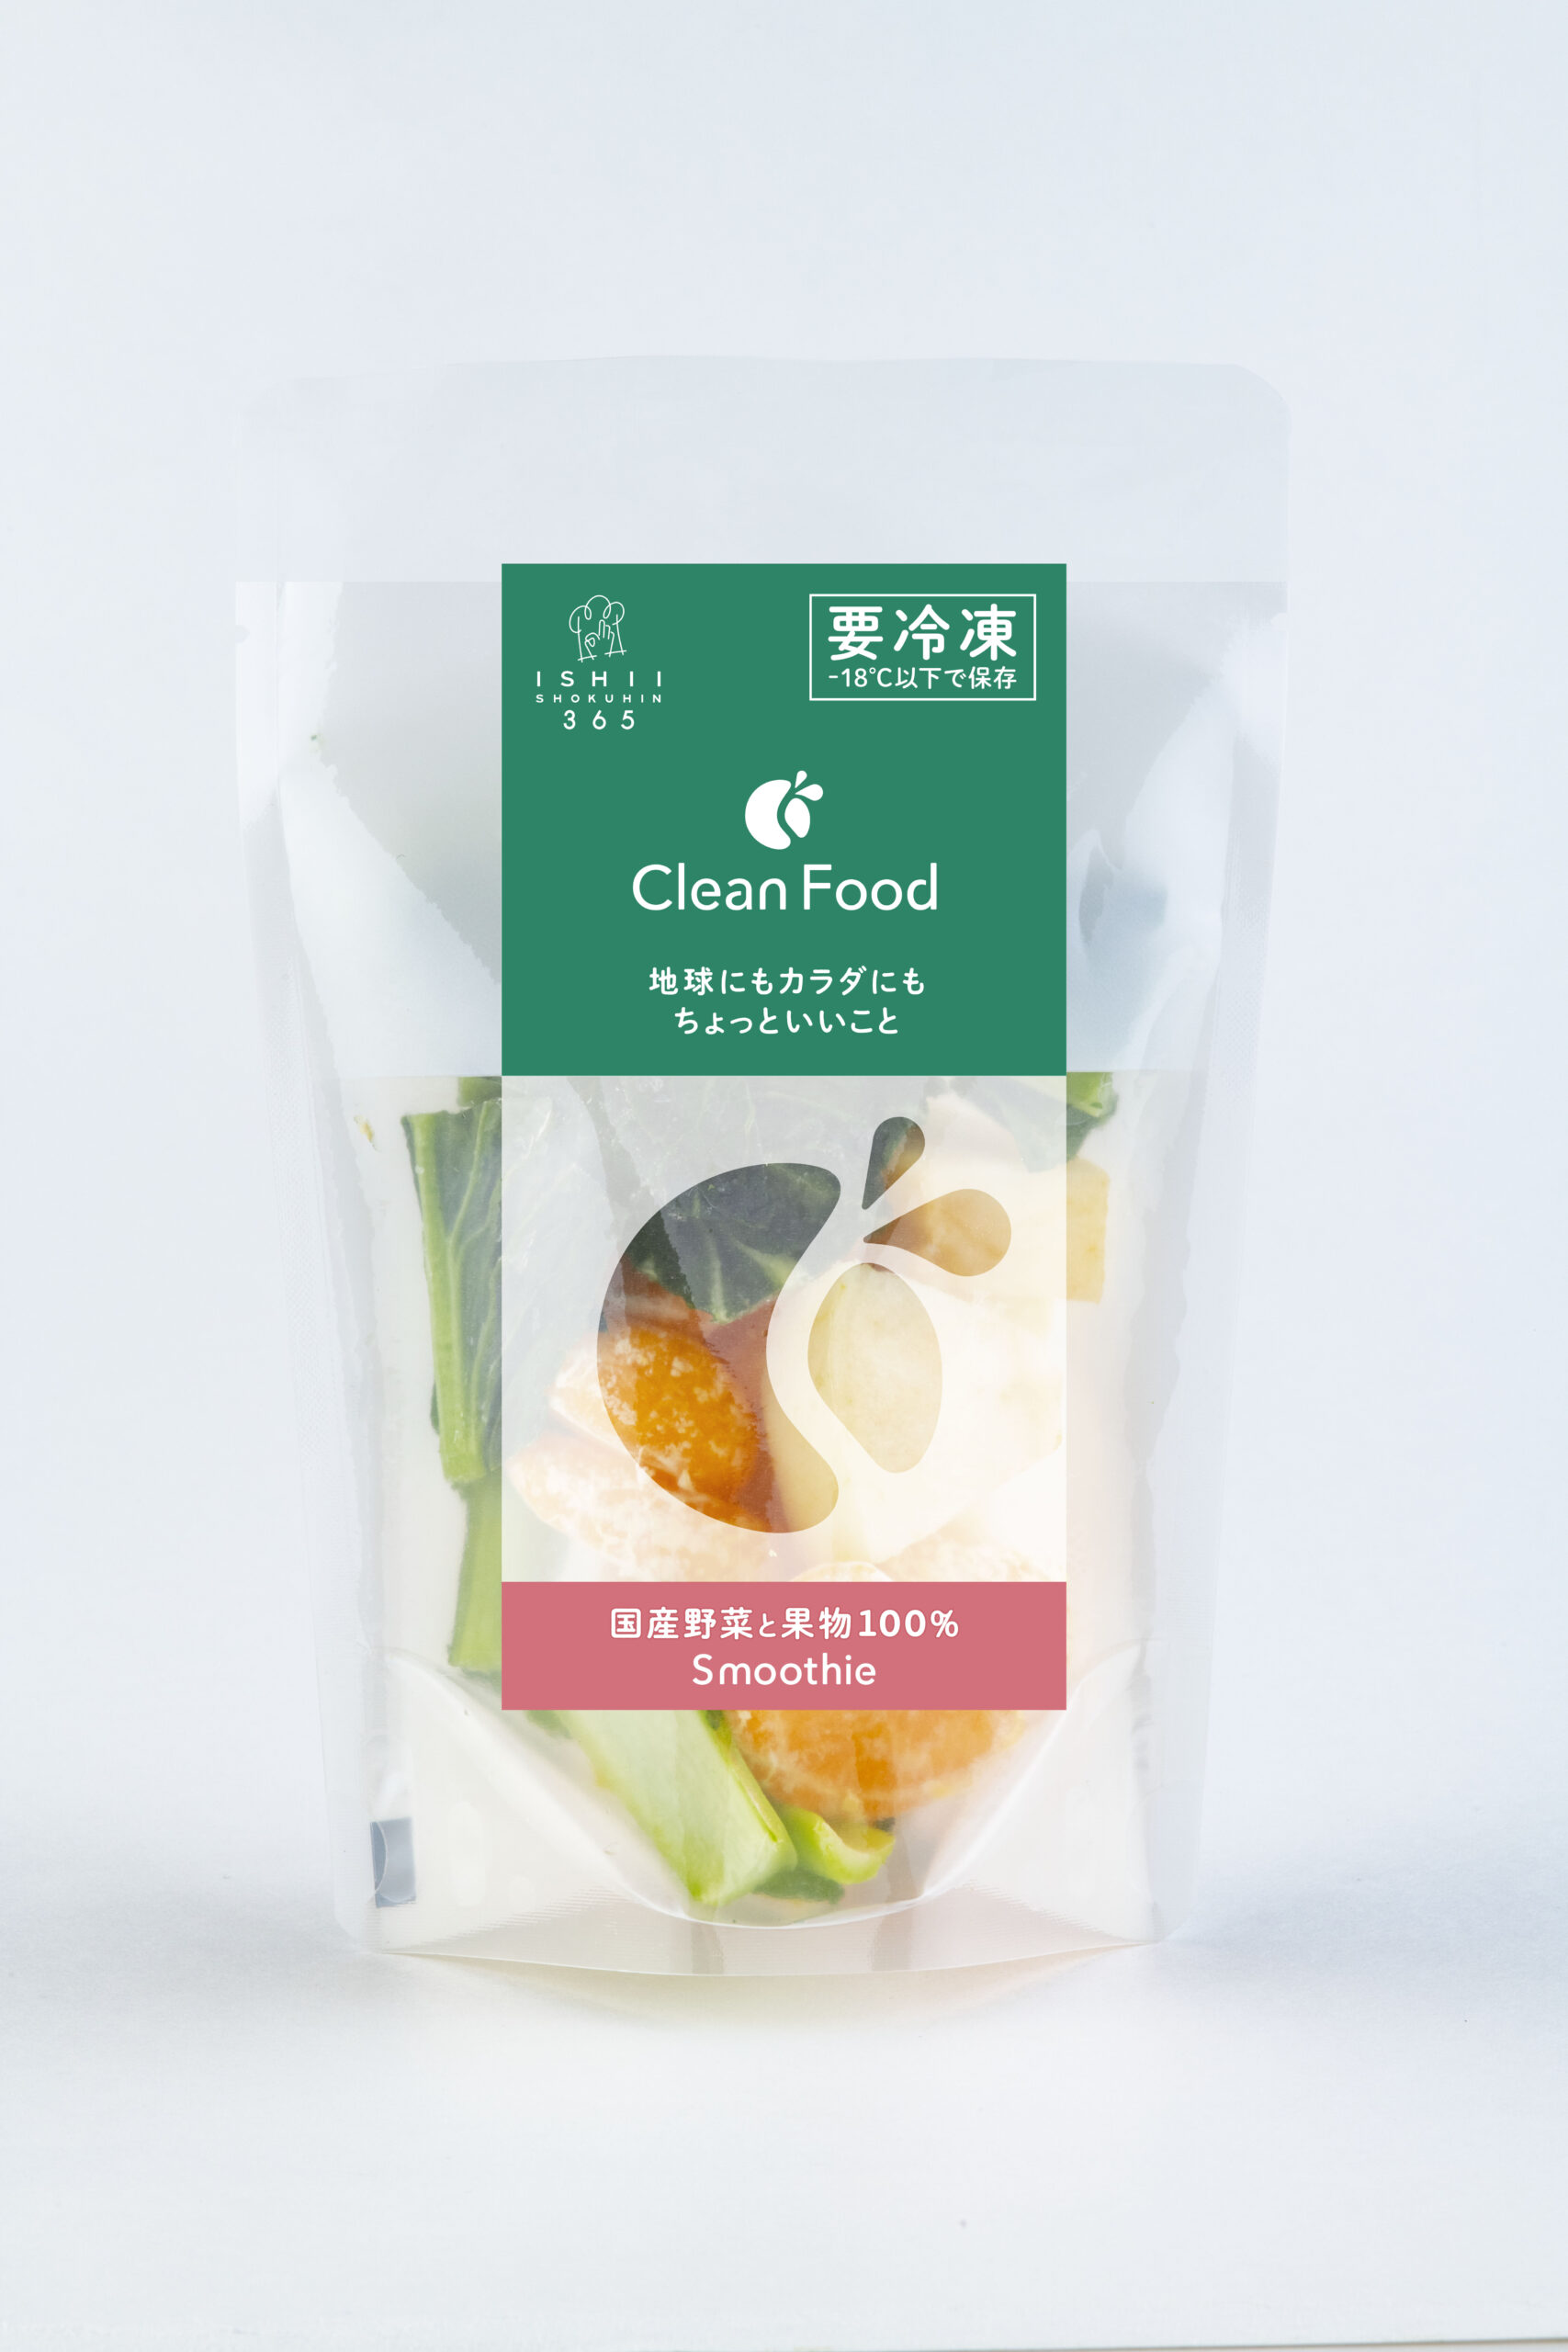 Clean Food 小松菜フレッシュ